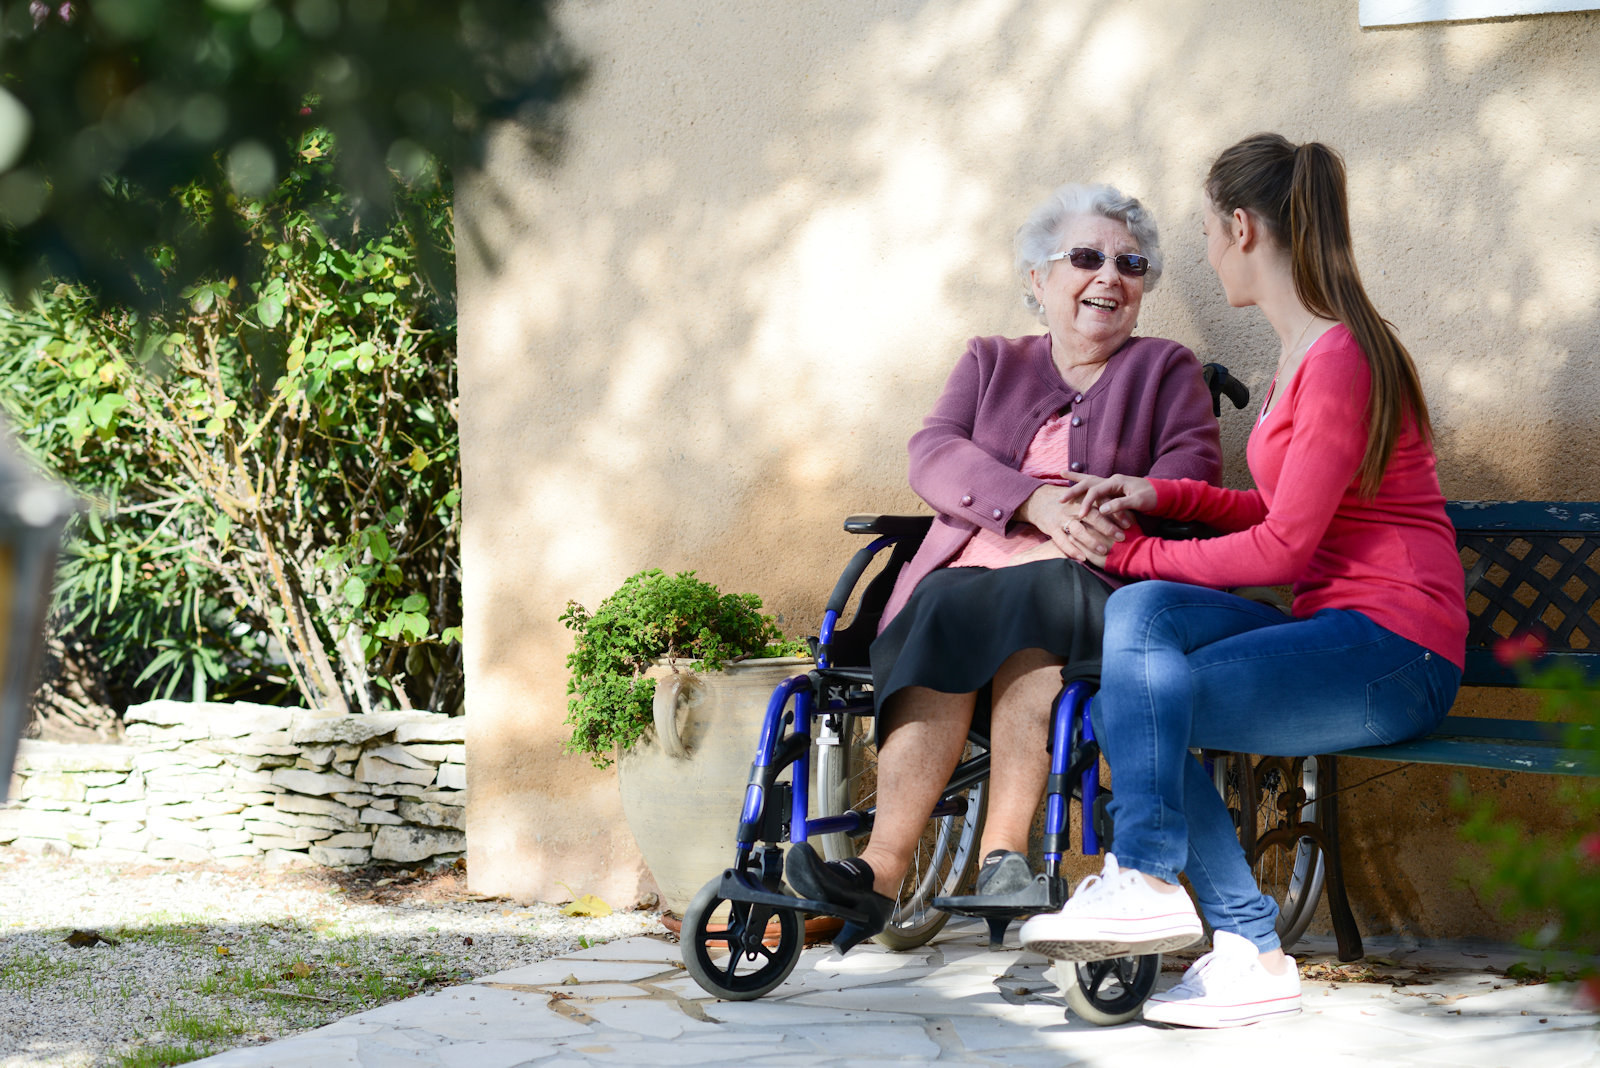 Επίσκεψη σε γηροκομείο για ηλικιωμένους με άνοια στην Αθήνα | Ηράκλειος οίκος ευγηρίας